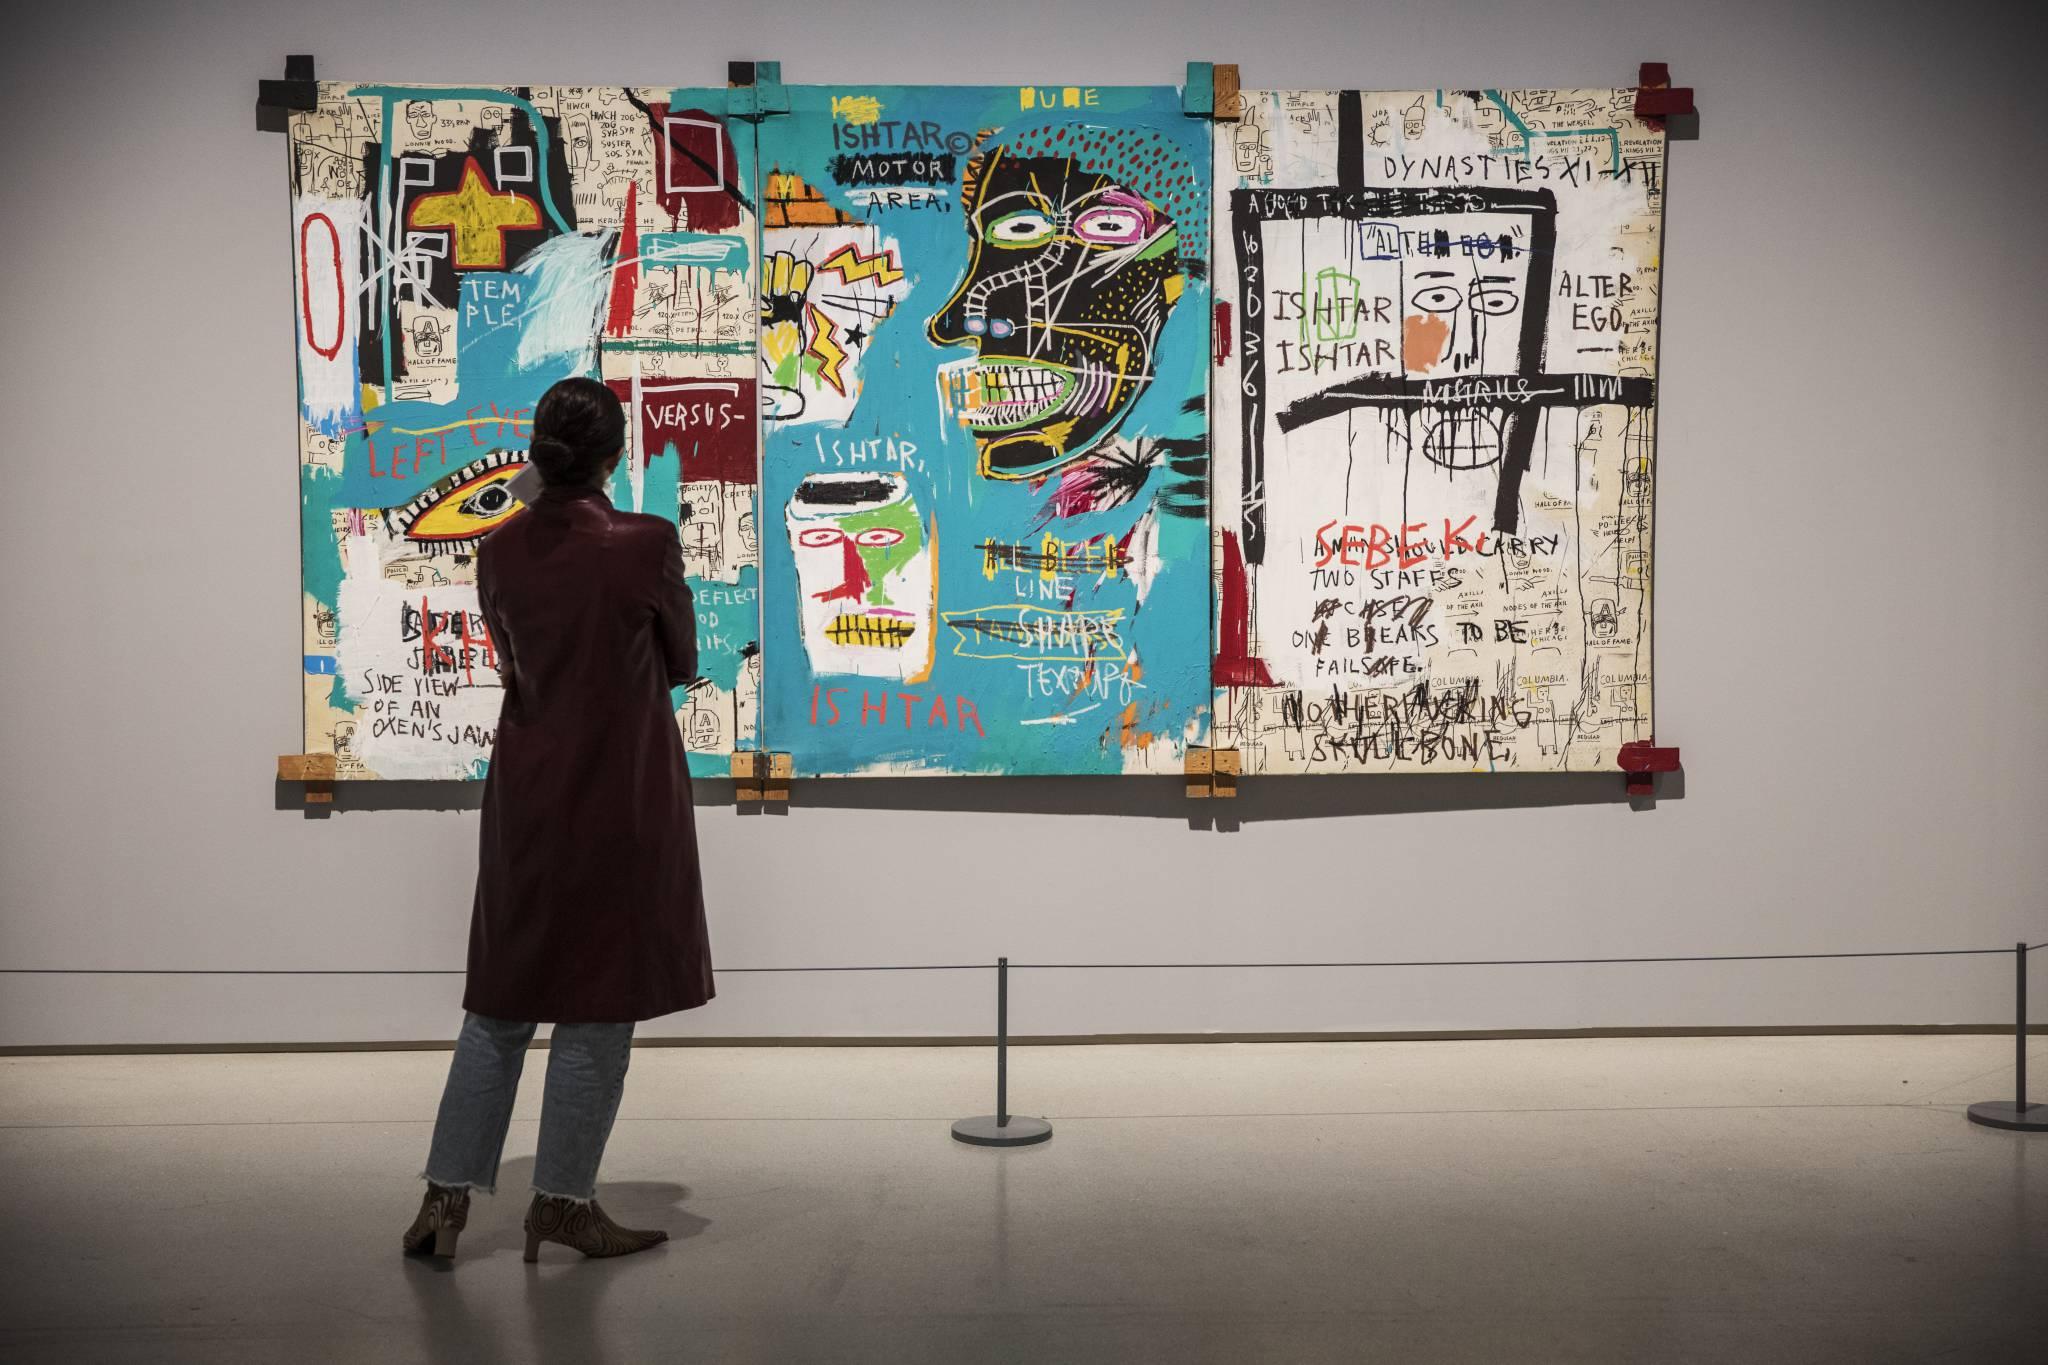 Prace Basquiata tętnią dzikością. Są prymitywne, niektórzy zarzucają mu, że nieco dziecinne. Sam mówił, że inspirują go czarnoskórzy niewolnicy przywożeni przed laty do Ameryki. (Fot. Forum)